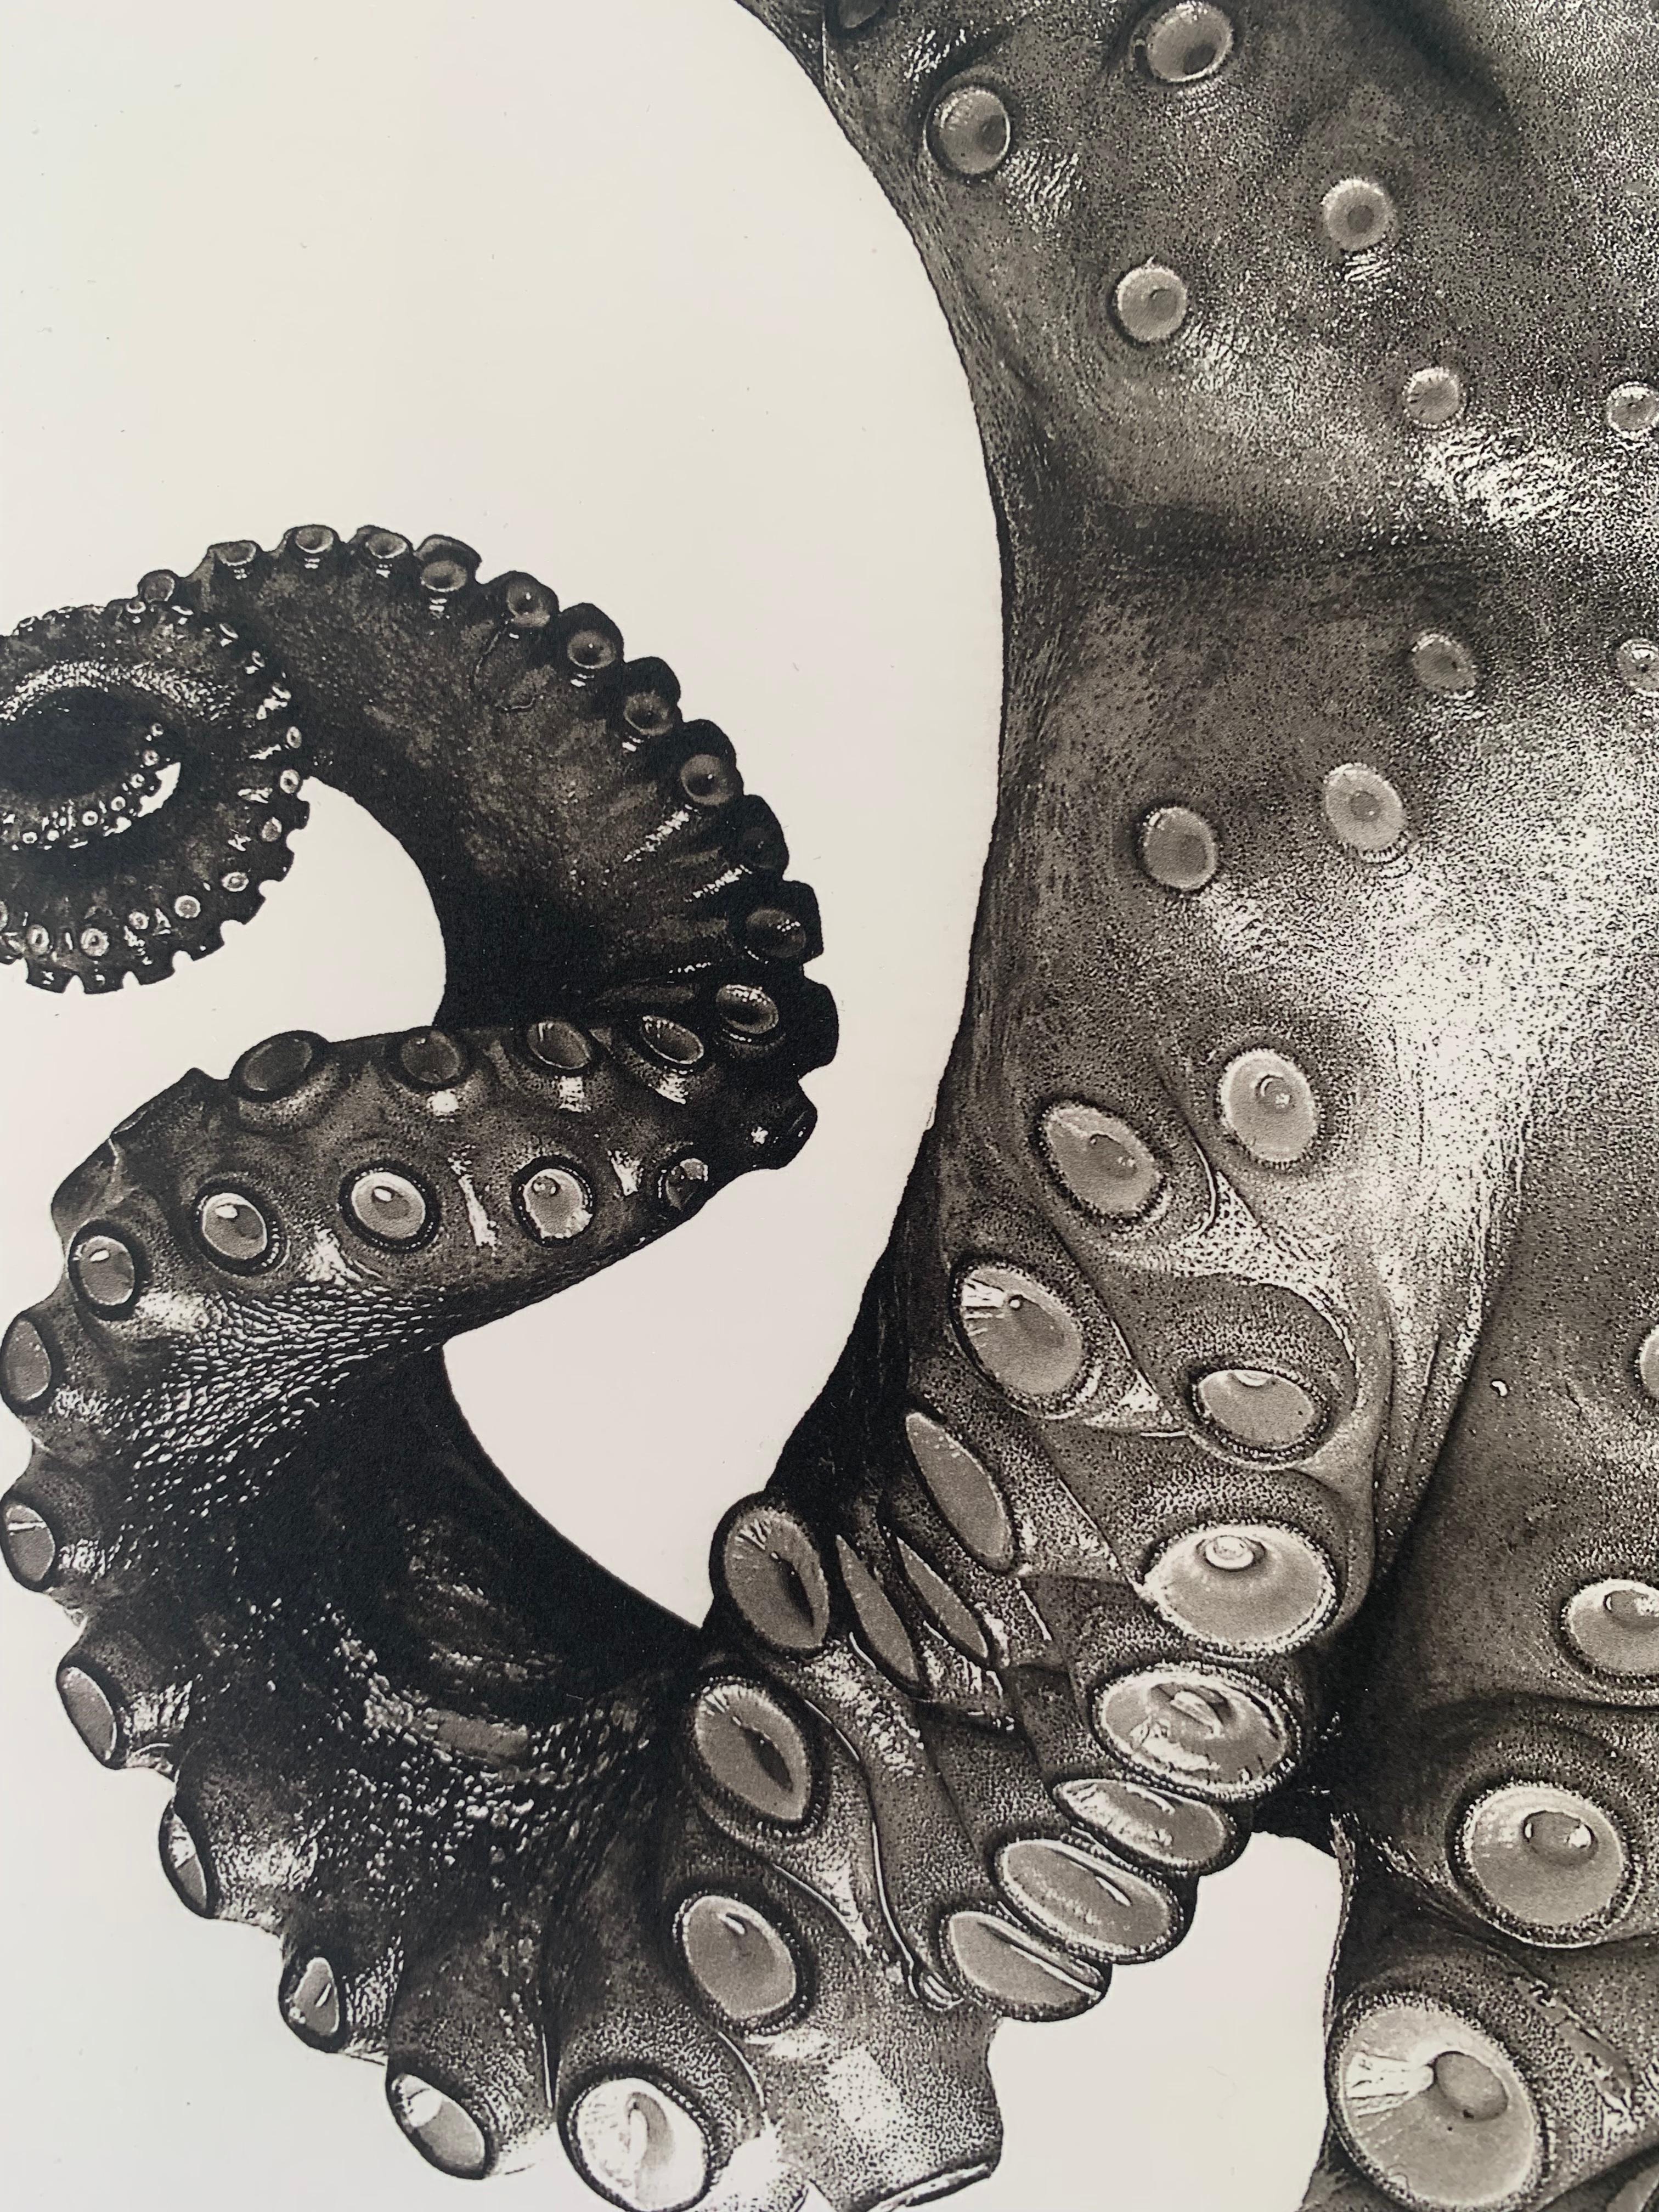 Octopus Vulgaris (édition spéciale) - Contemporain Photograph par Jan C. Schlegel